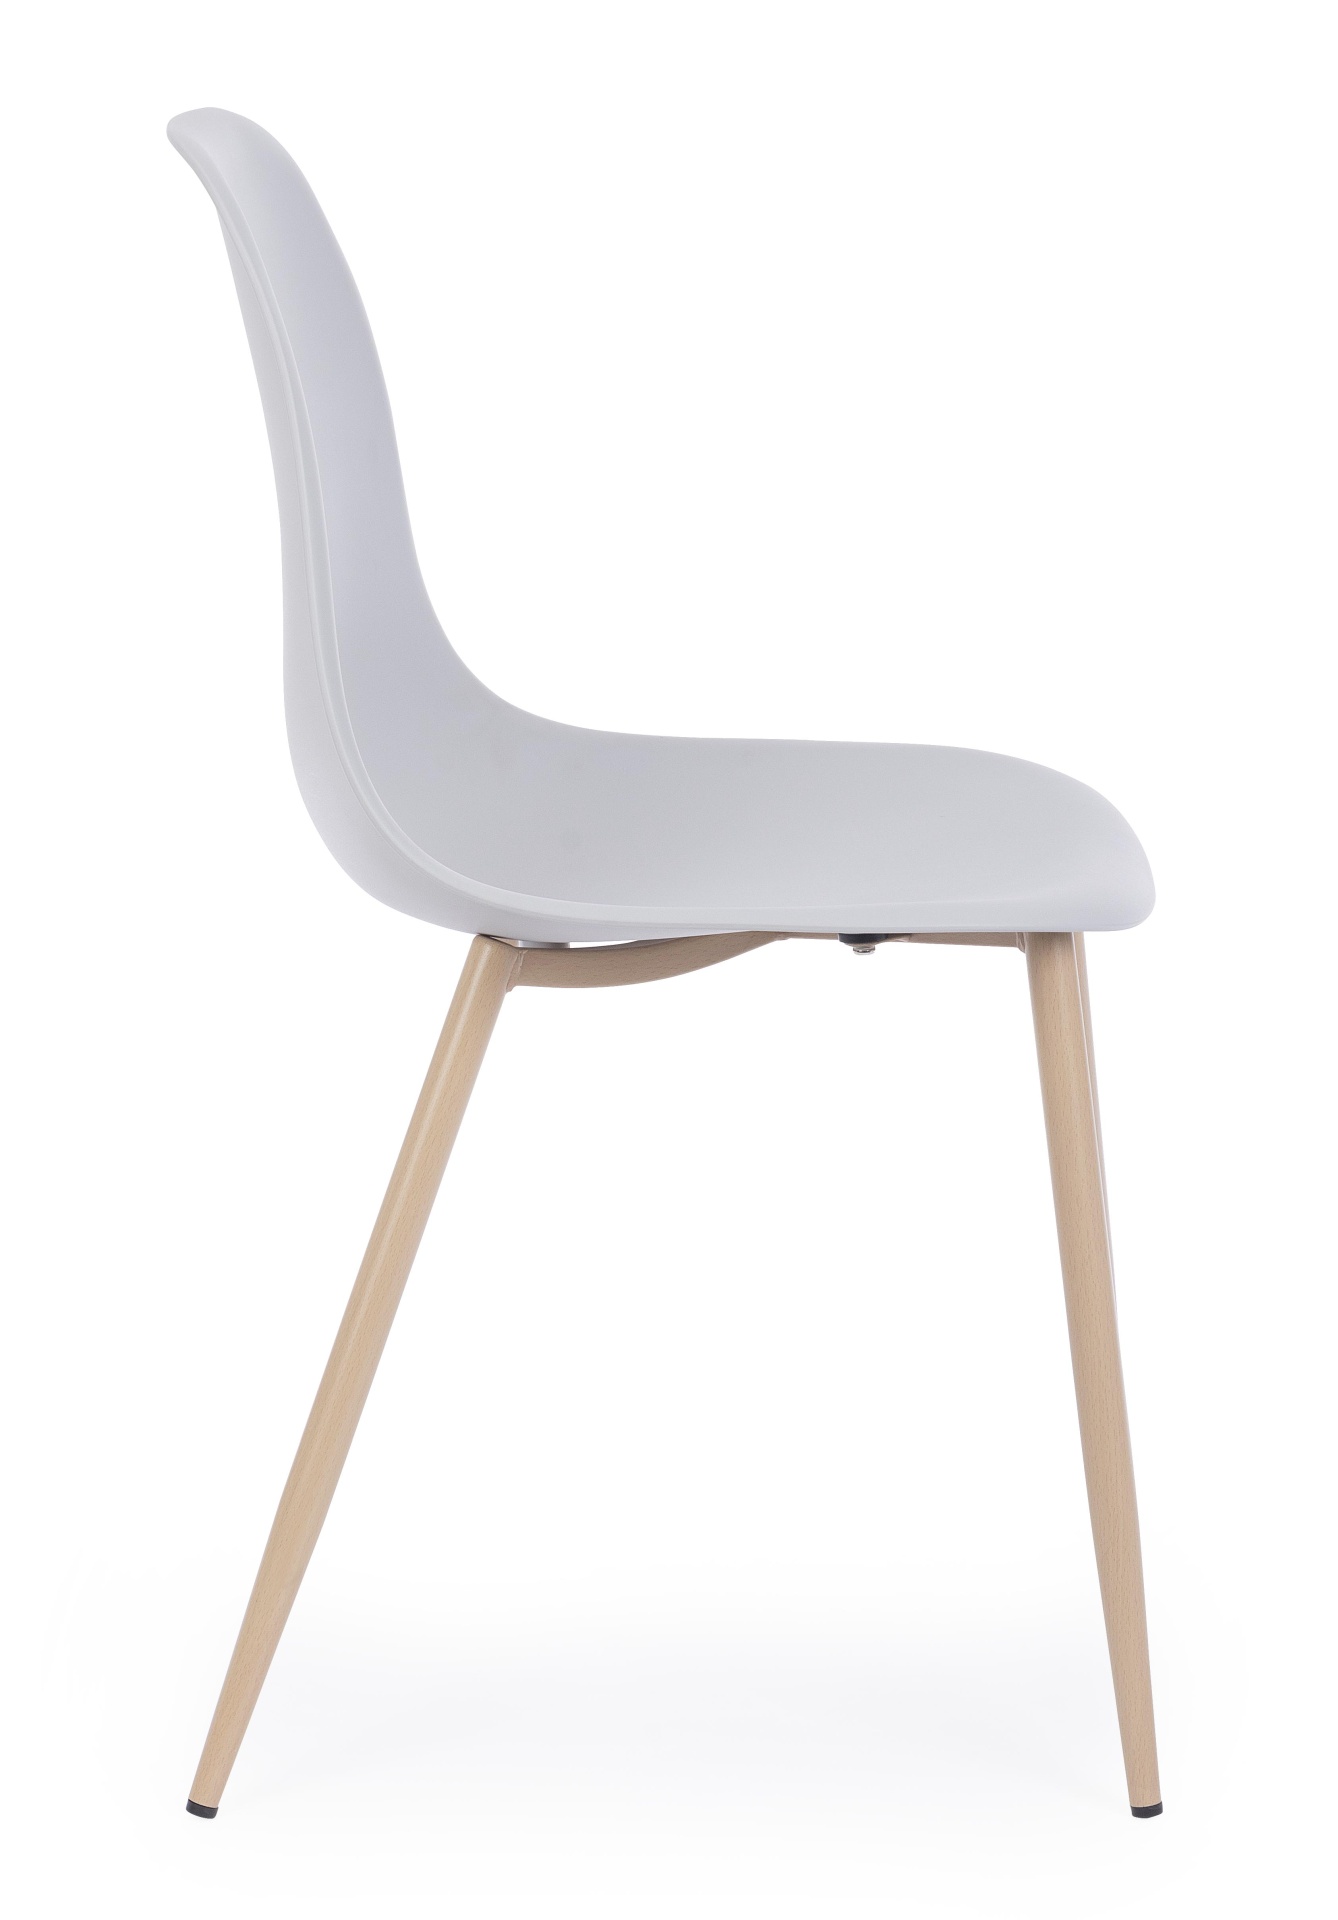 Der Stuhl Mandy überzeugt mit seinem modernem Design. Gefertigt wurde der Stuhl aus Kunststoff, welcher einen grauen Farbton besitzt. Das Gestell ist aus Metall, welches eine Holz-Optik besitzt. Die Sitzhöhe des Stuhls ist 45 cm.